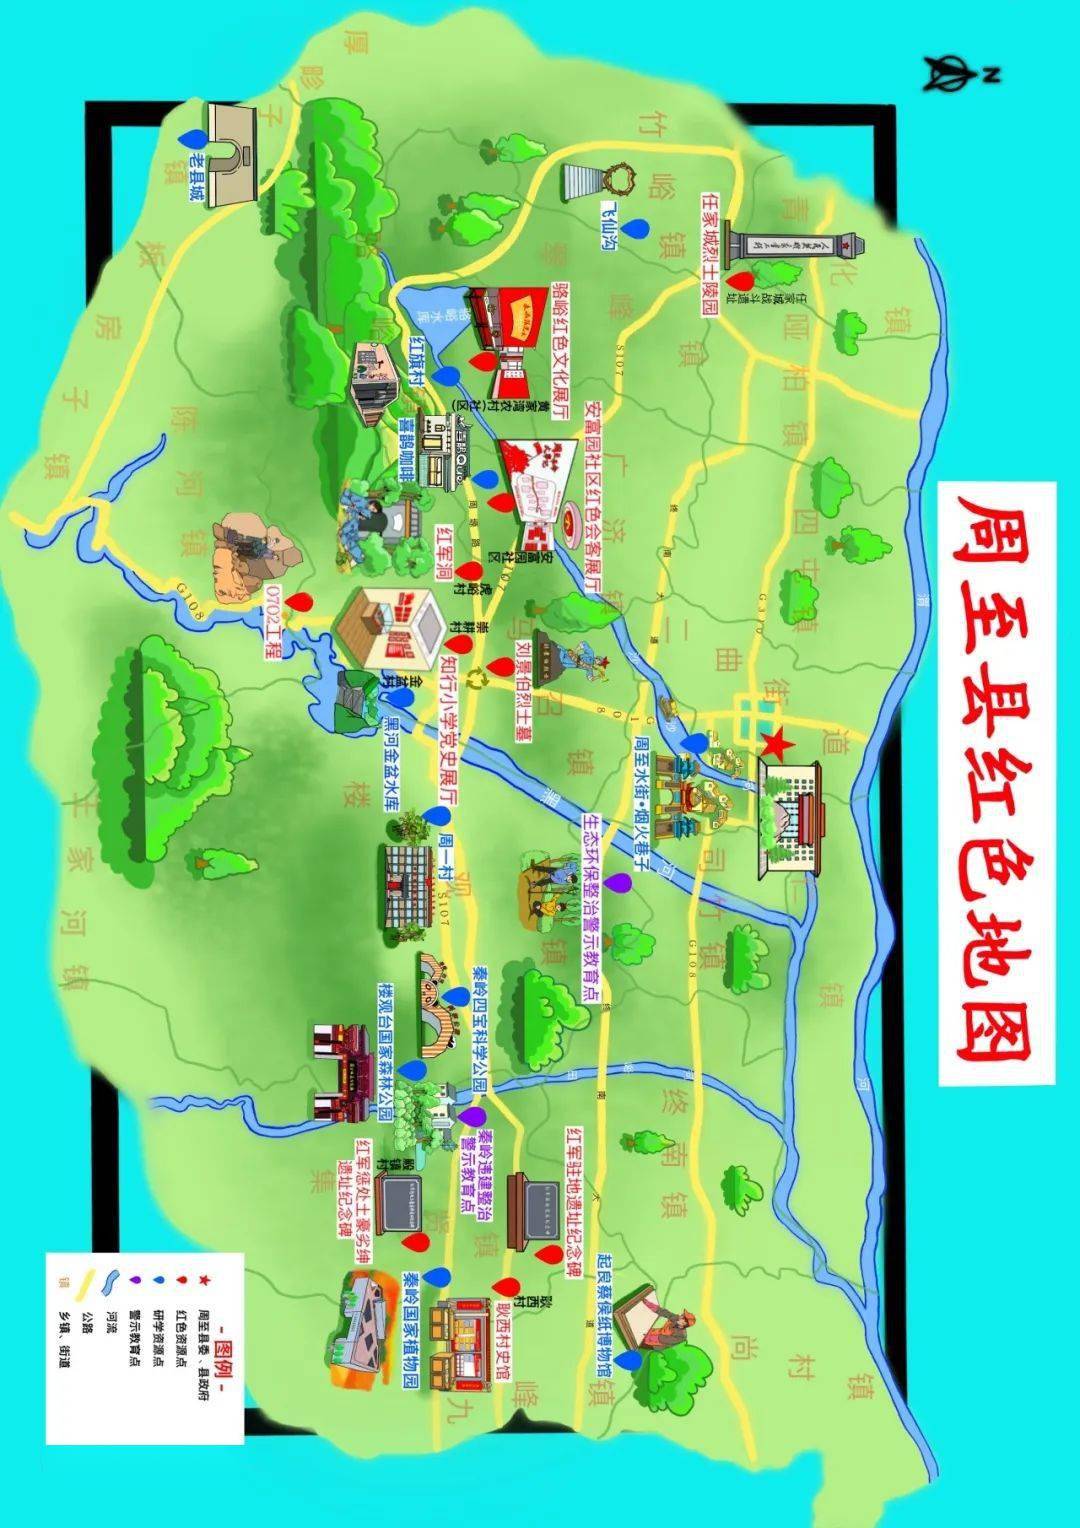 周至县竹峪镇地图图片